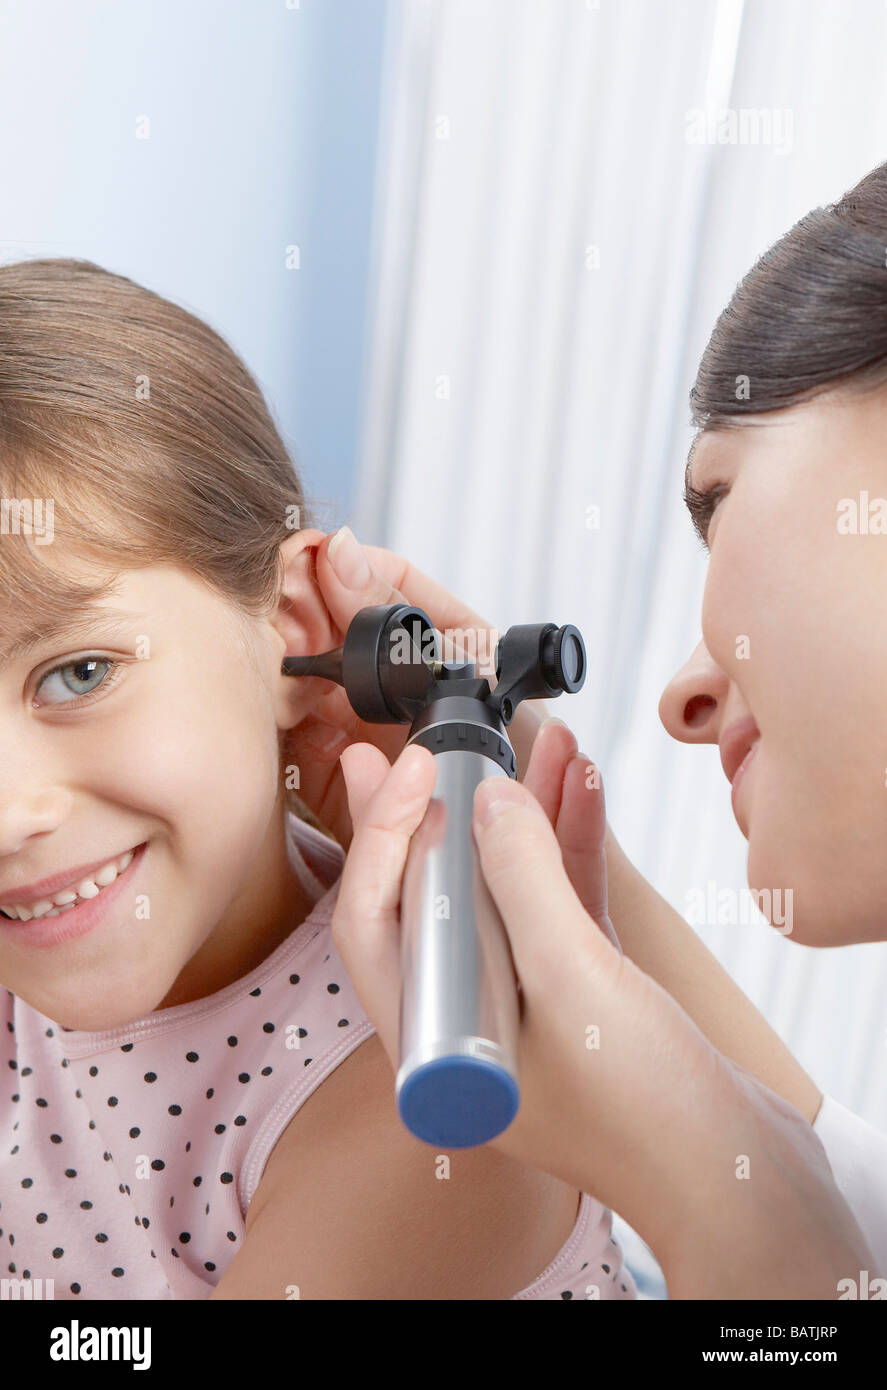 Ohr-Prüfung. Otoskop verwendet wird von einem Arzt für Allgemeinmedizin, um ein sechs-jährigen Mädchen Ohr zu untersuchen. Stockfoto